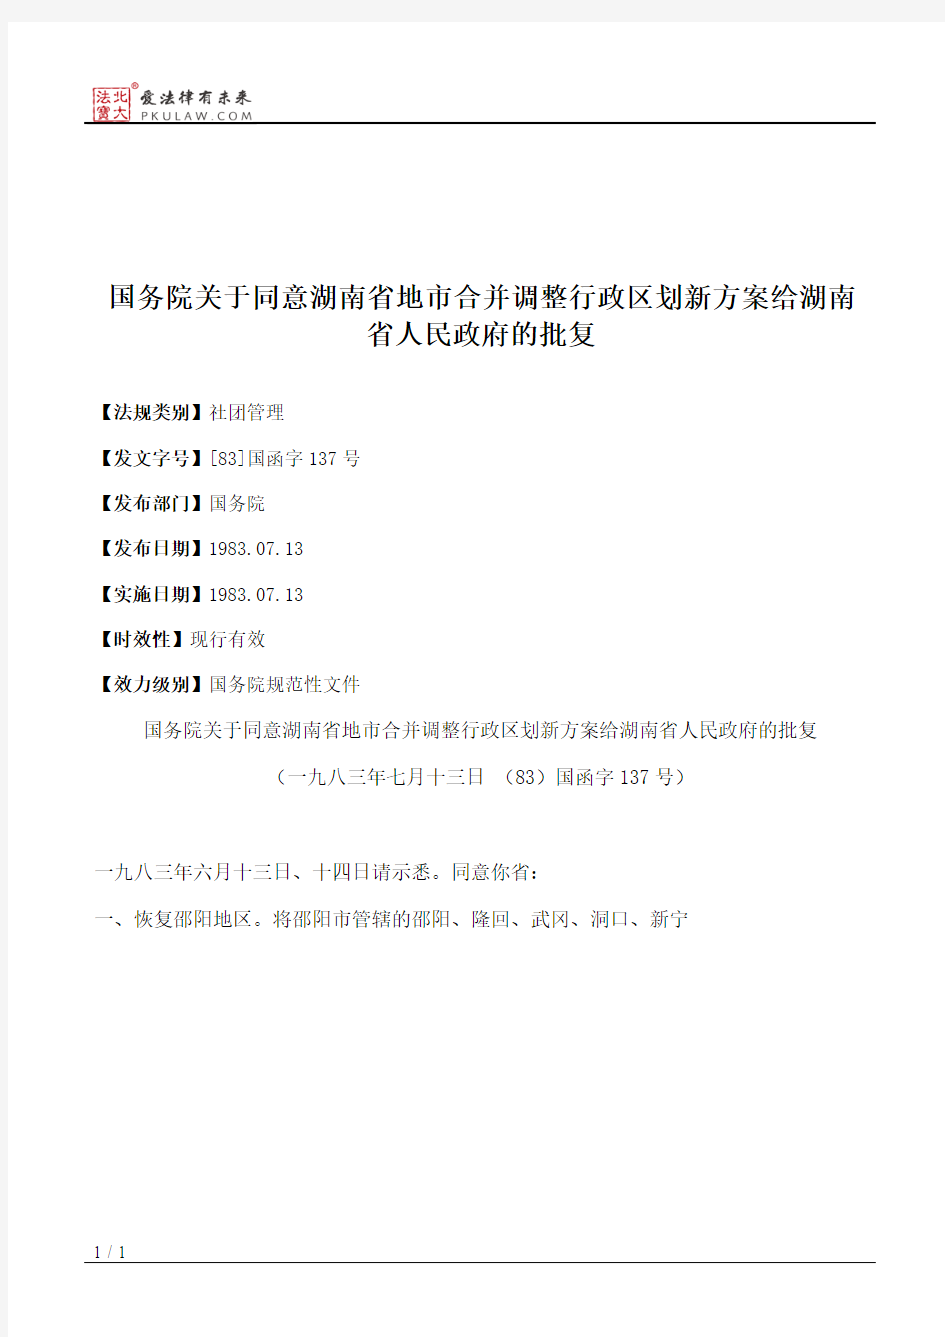 国务院关于同意湖南省地市合并调整行政区划新方案给湖南省人民政